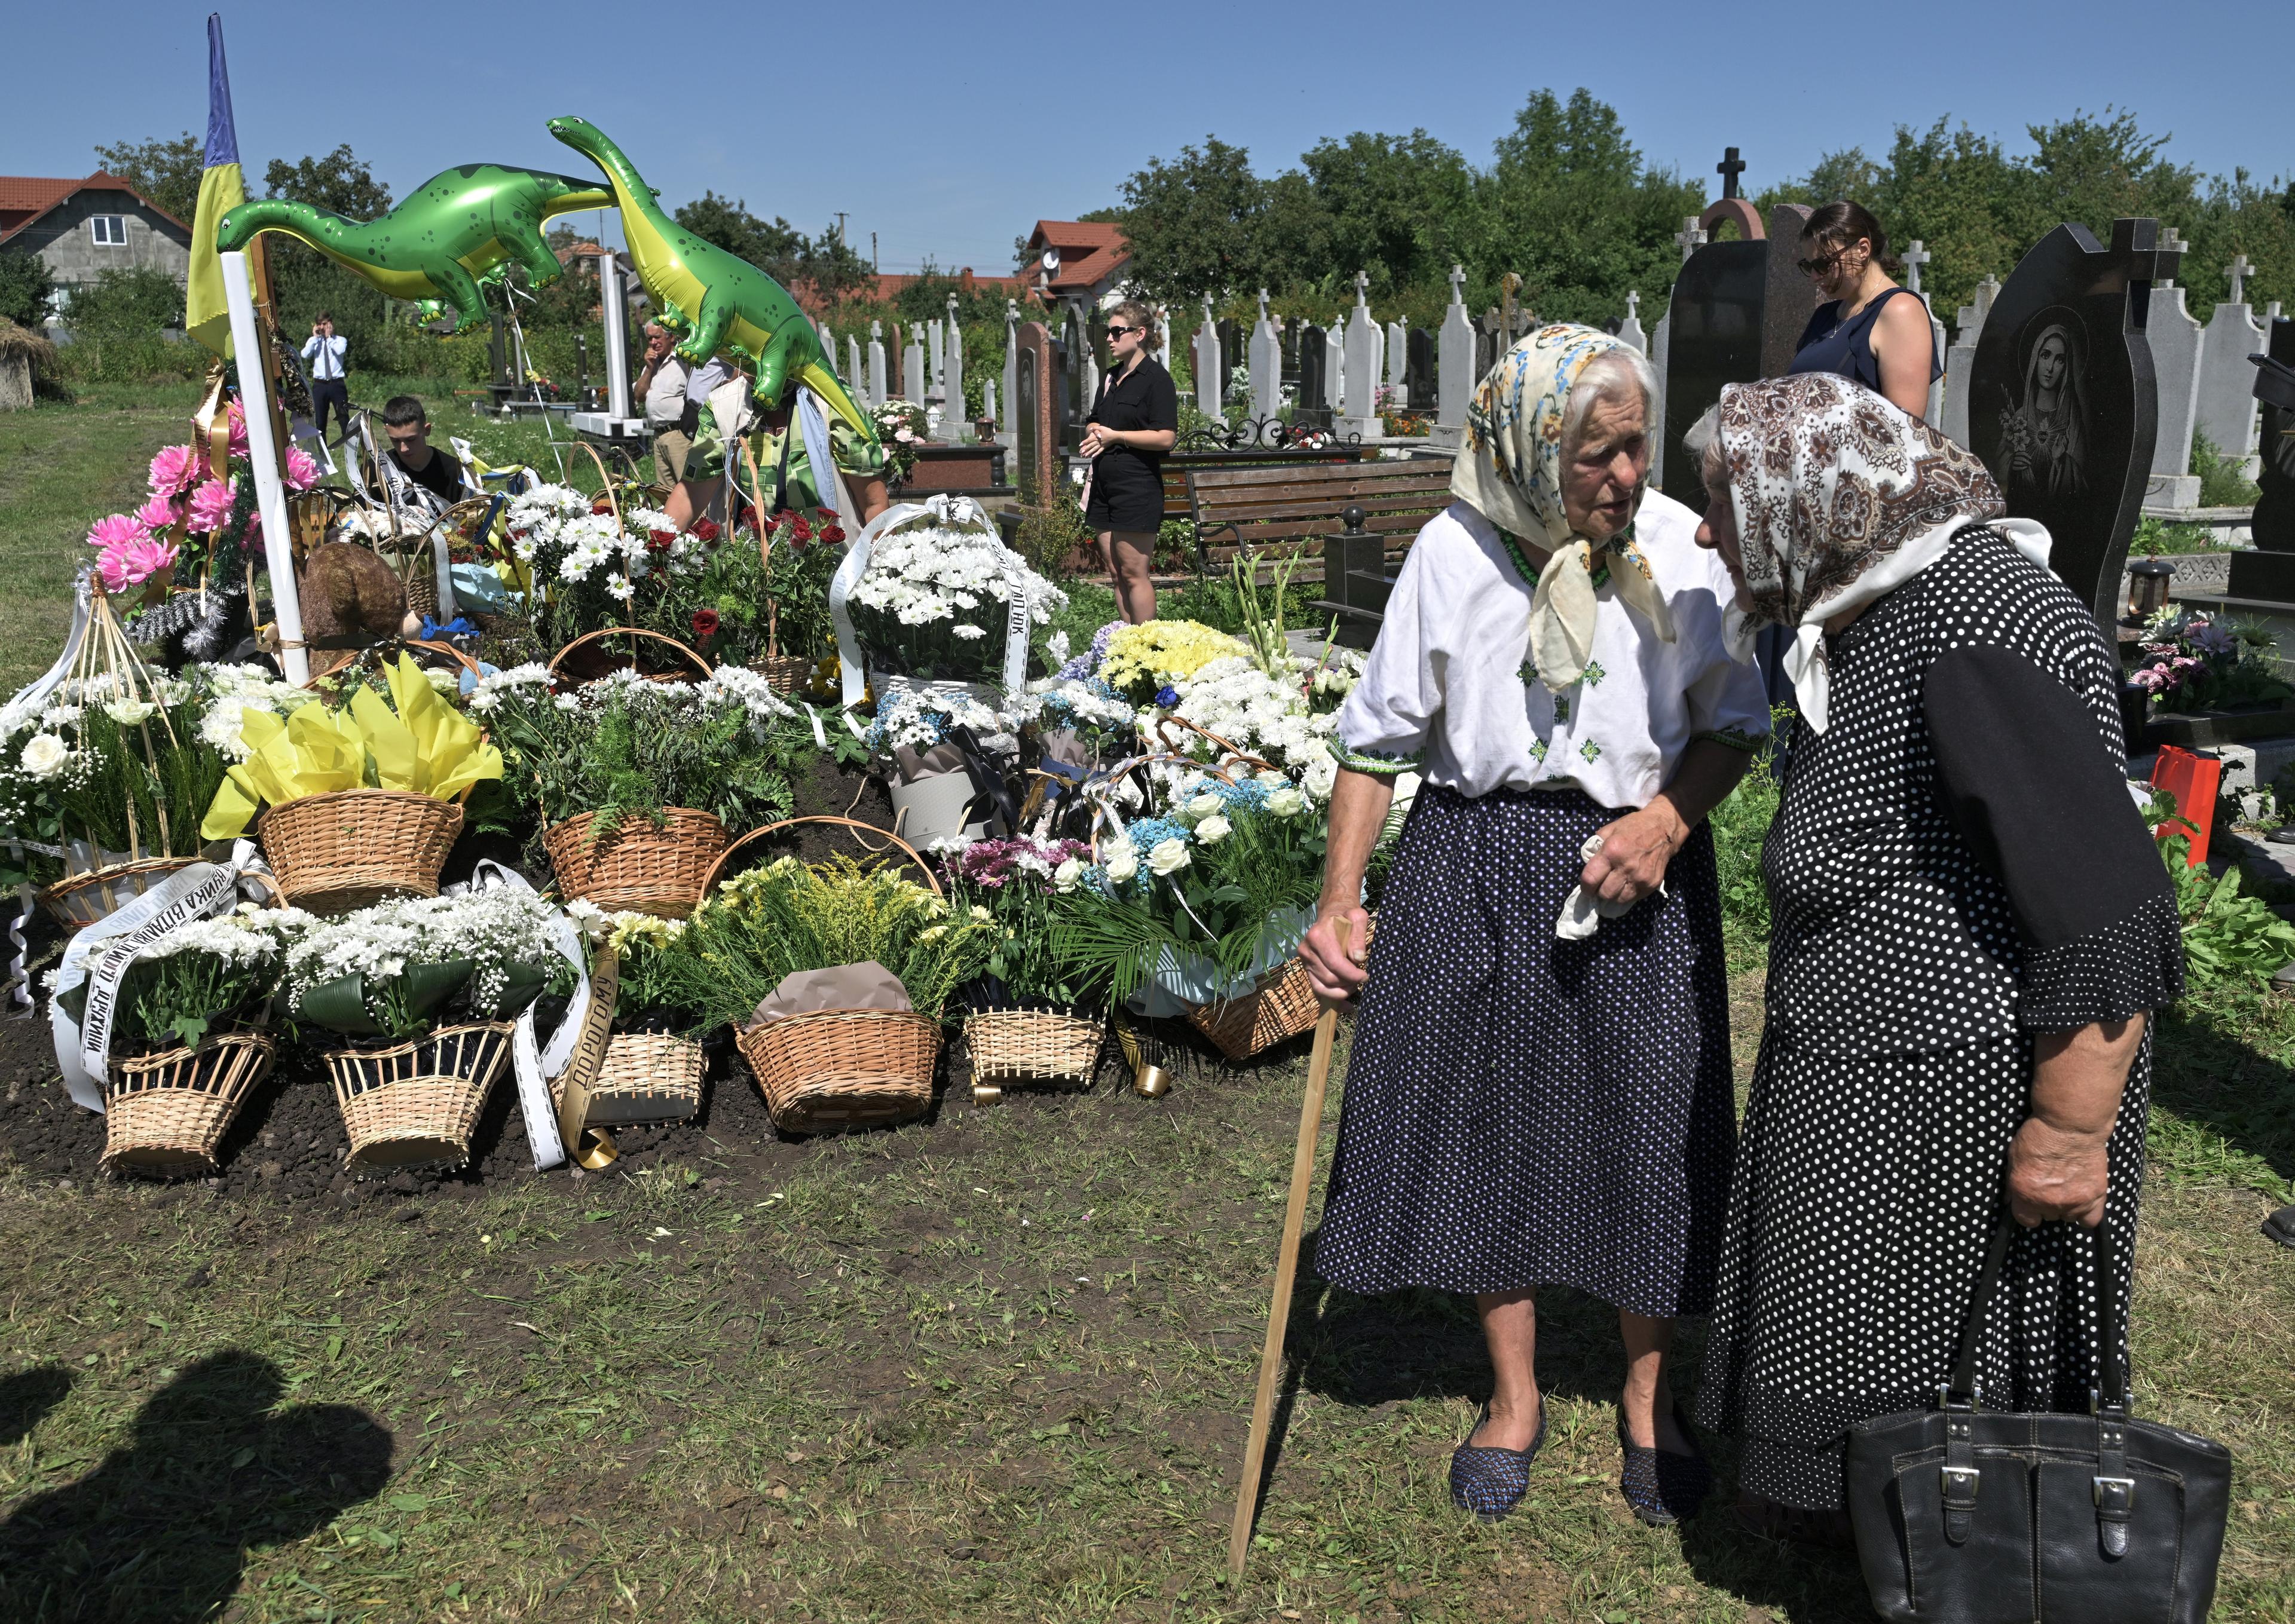 dwie staruszki w chustkach przed świeżym grobem udekorowanym koszykami z kwiatami